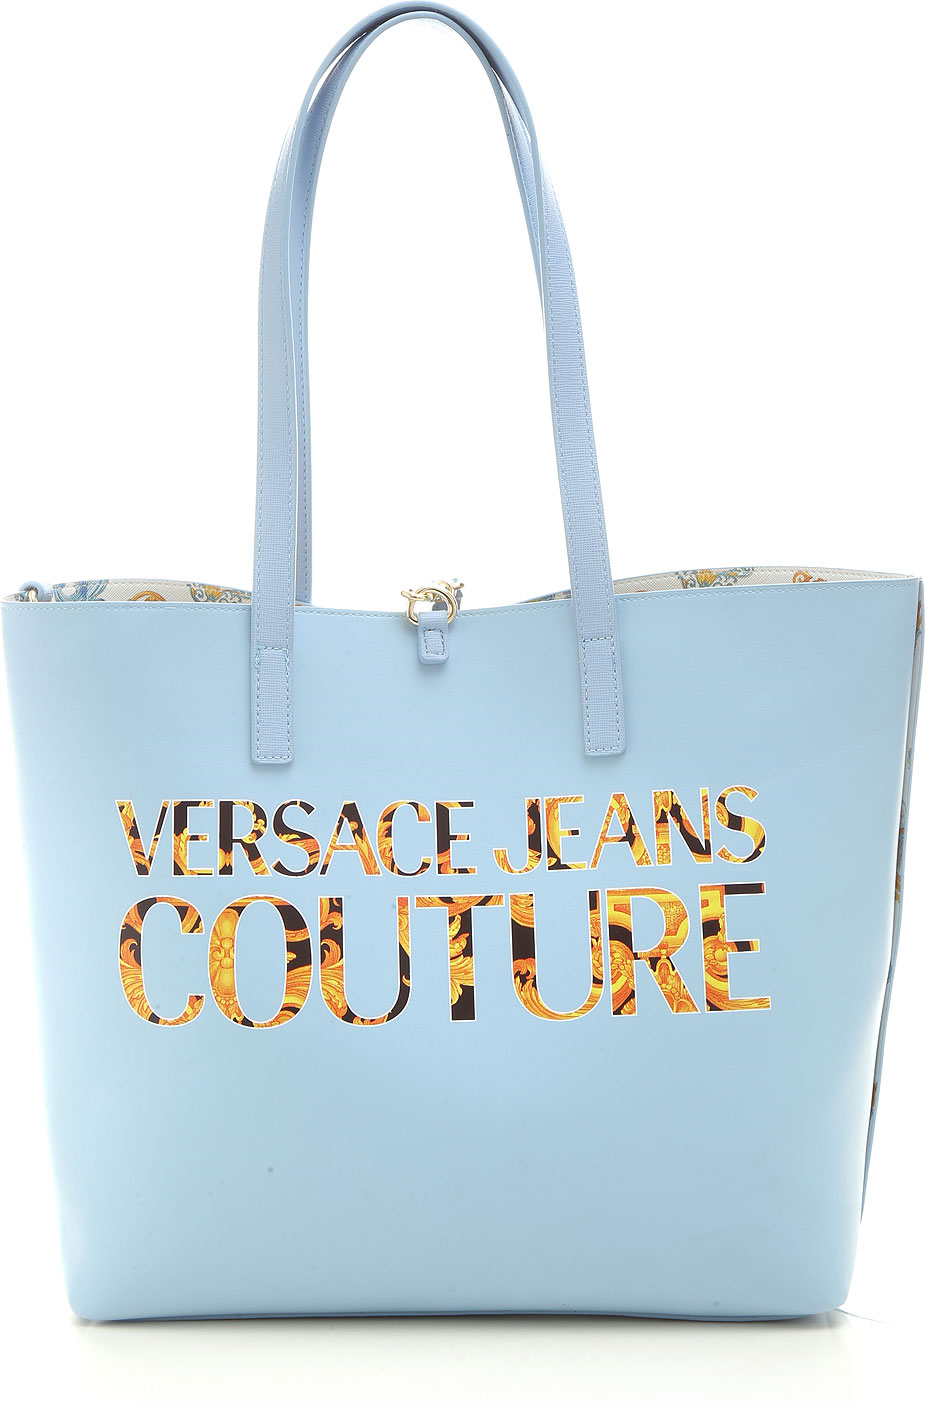 Handbags Versace Jeans Couture , Style code: e1vwabz1-71588-033